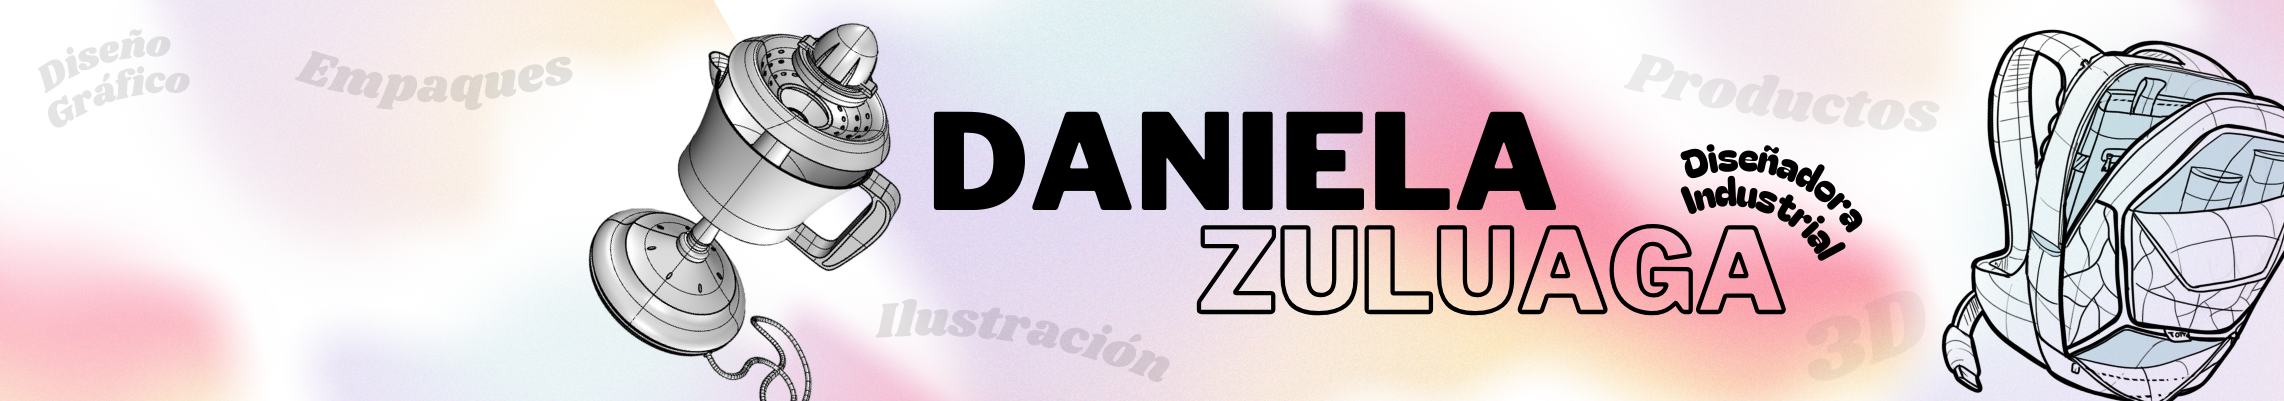 Daniela Zuluaga Salazar's profile banner